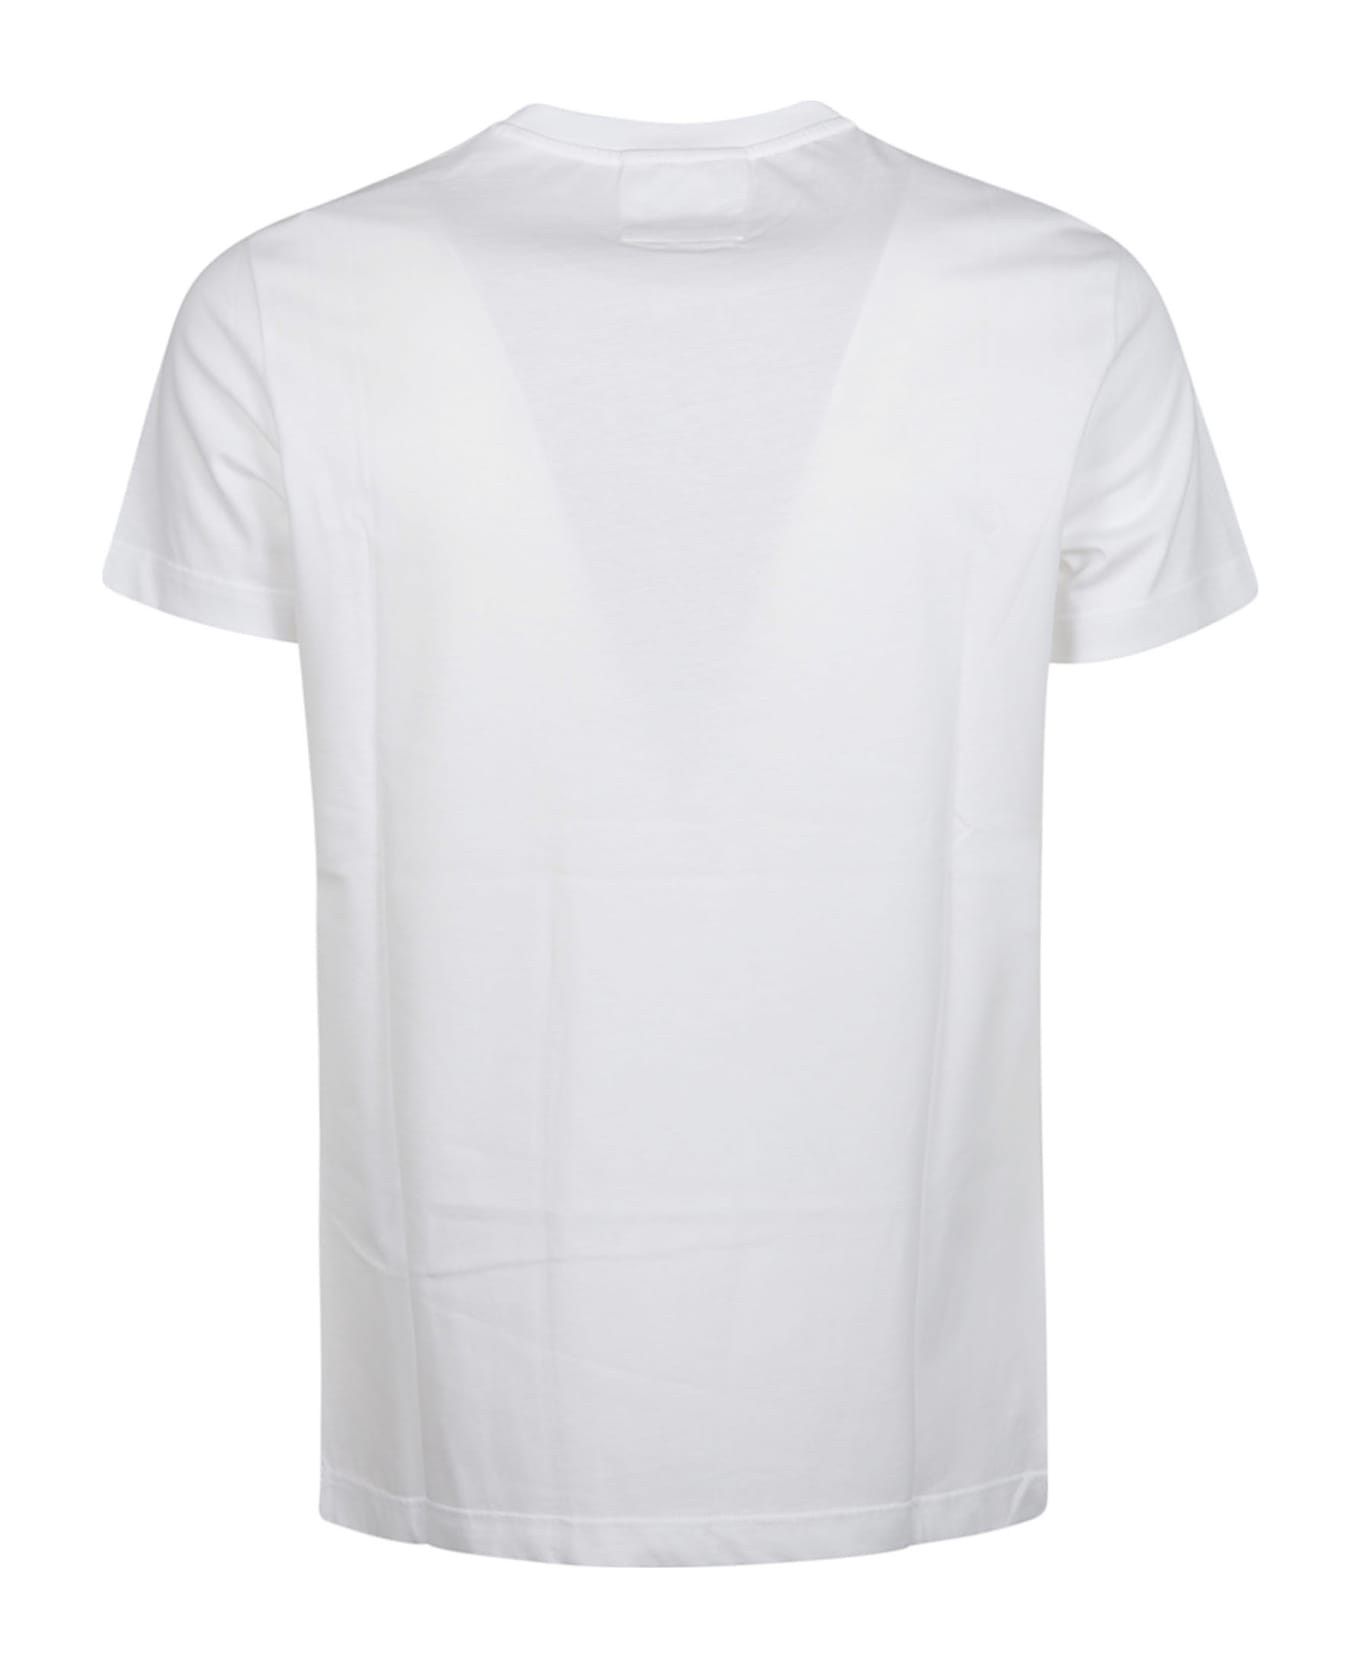 Emporio Armani T-shirt - Bianco Ottico